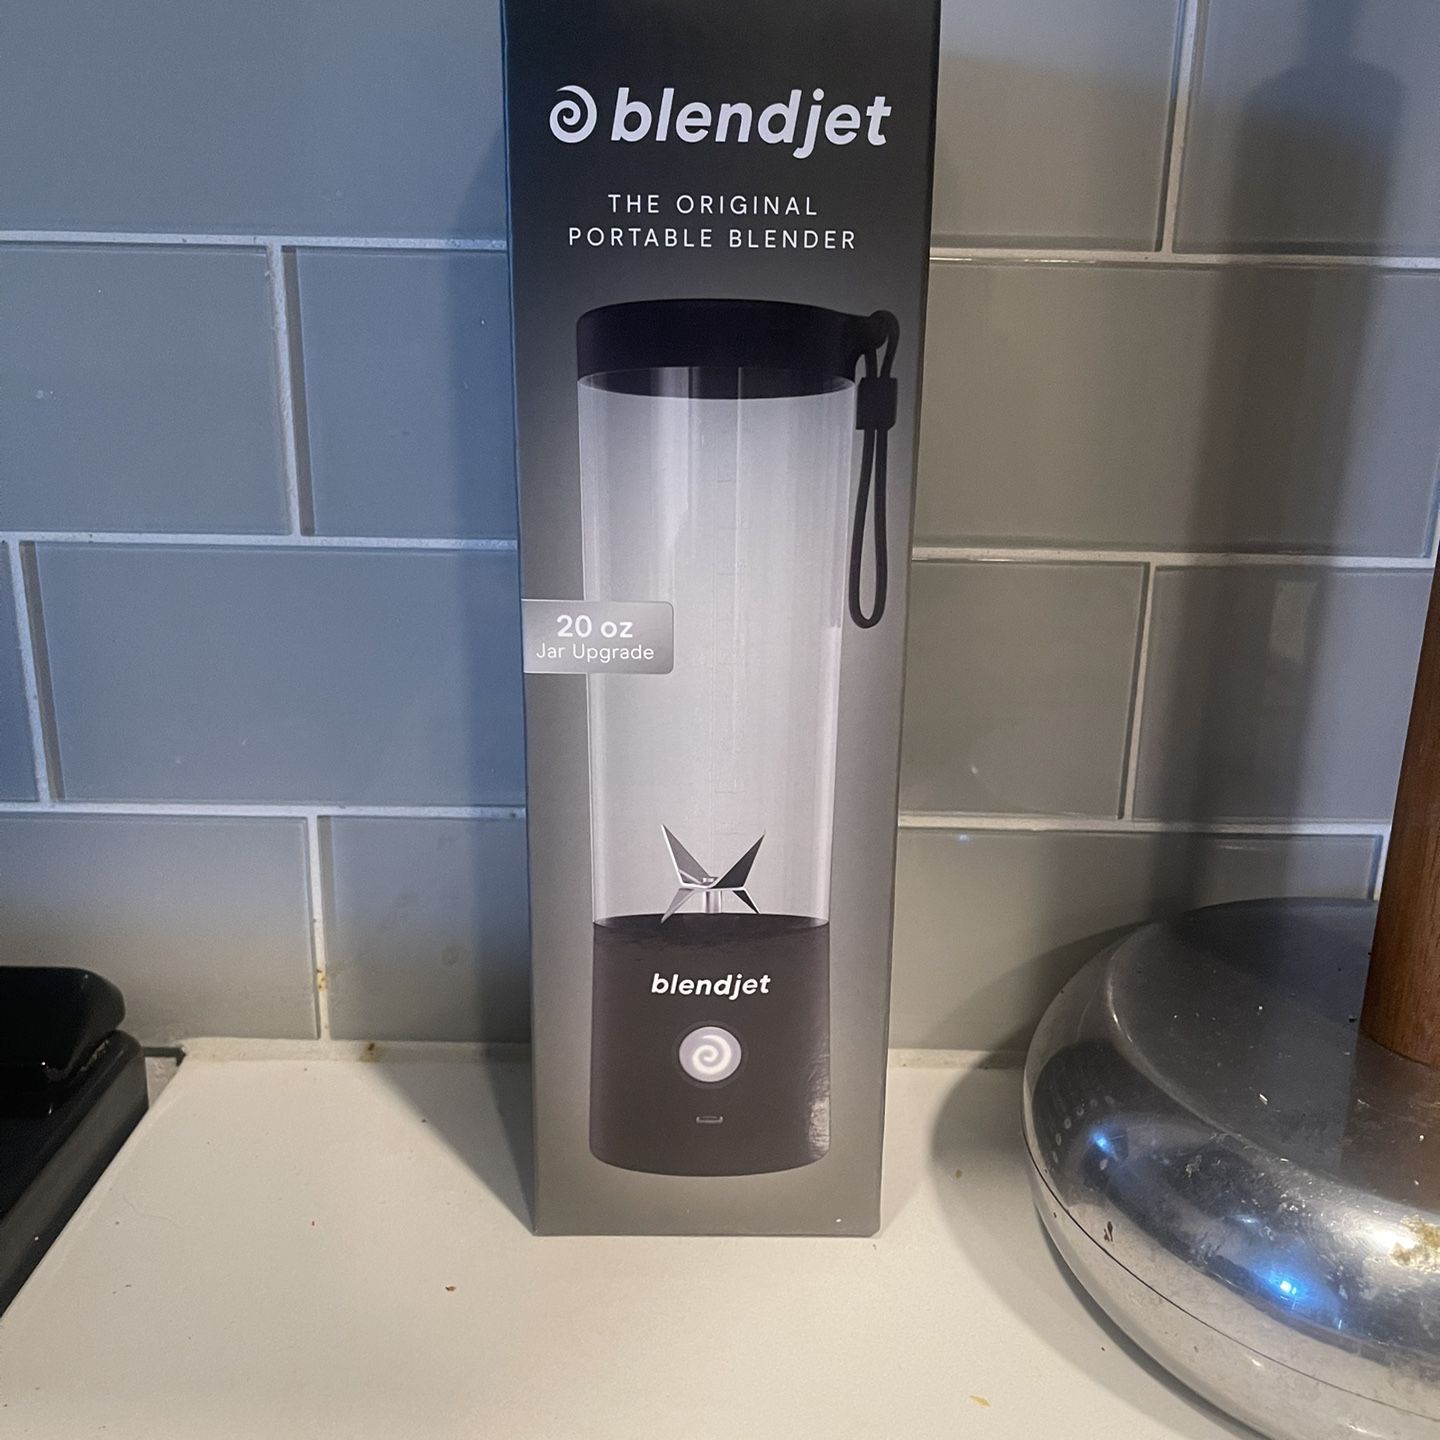 BlendJet 2, the Original Portable Blender, 20 oz, Black 